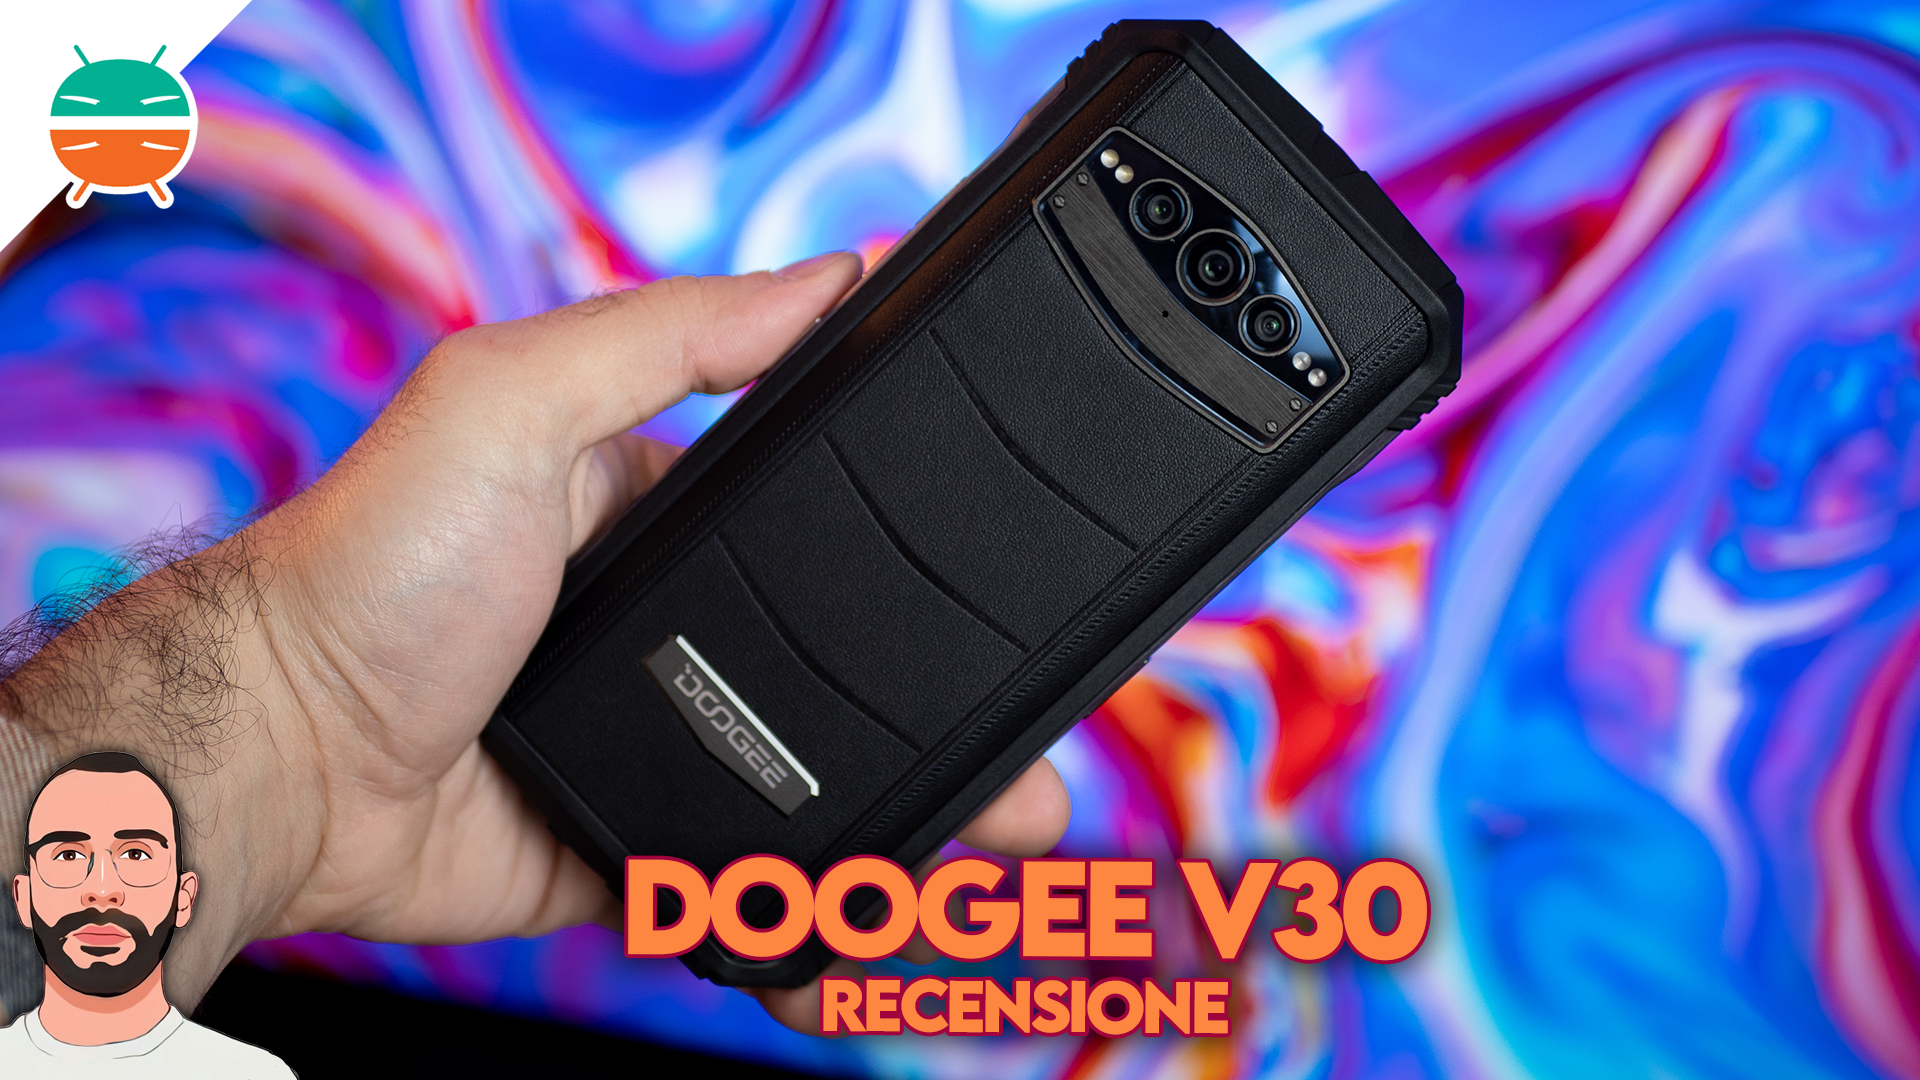 Revisión de Doogee V30: el primer teléfono inteligente RUGGED con eSIM -  GizChina.it